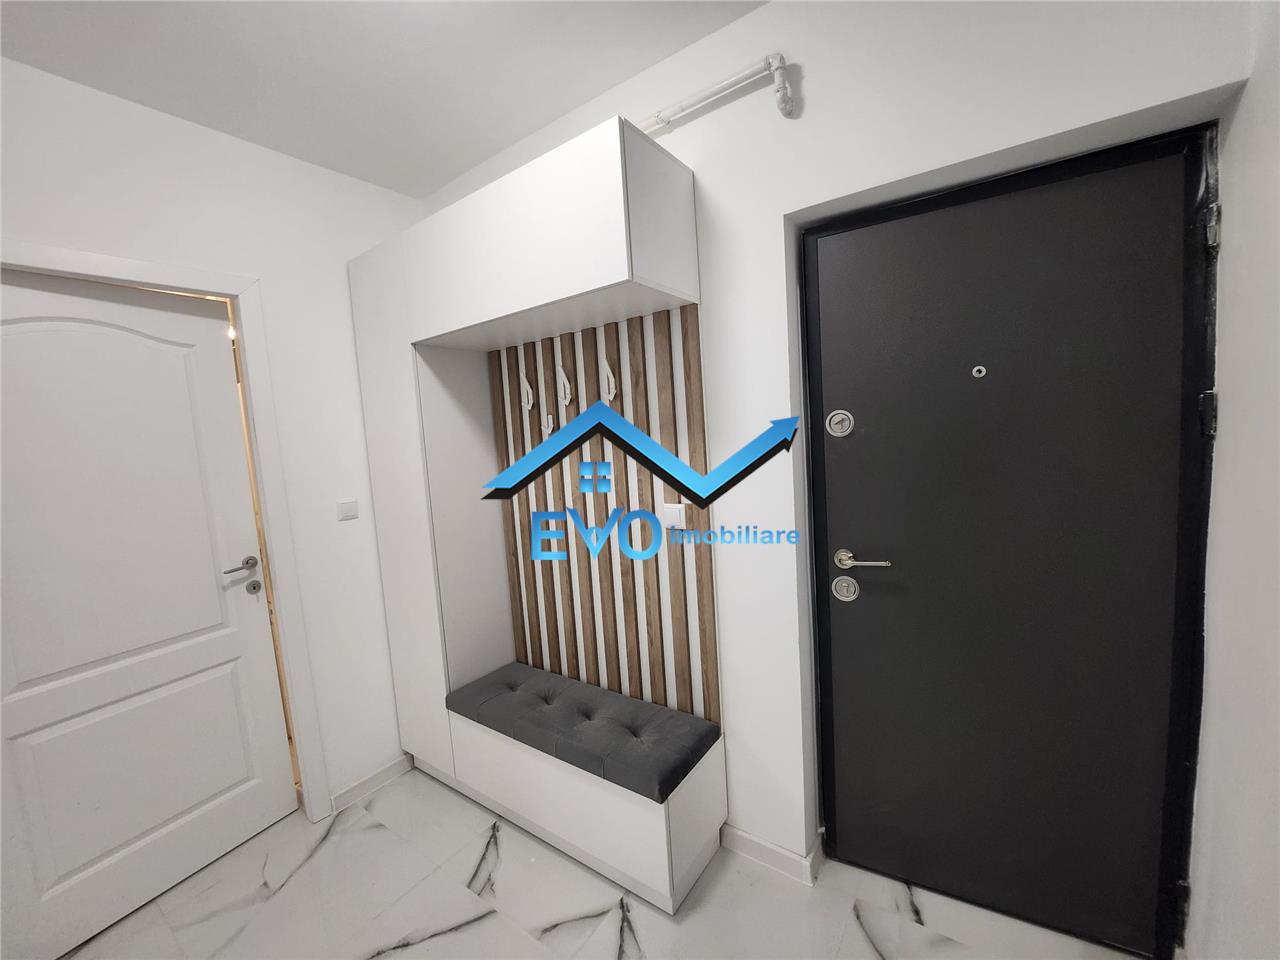 Apartament cu 1 camera si gradina proprie de 18 mp, de vanzare in Lunca Cetatuii. Loc de parcare inclus in pret!  Promotie! Comision 0 %